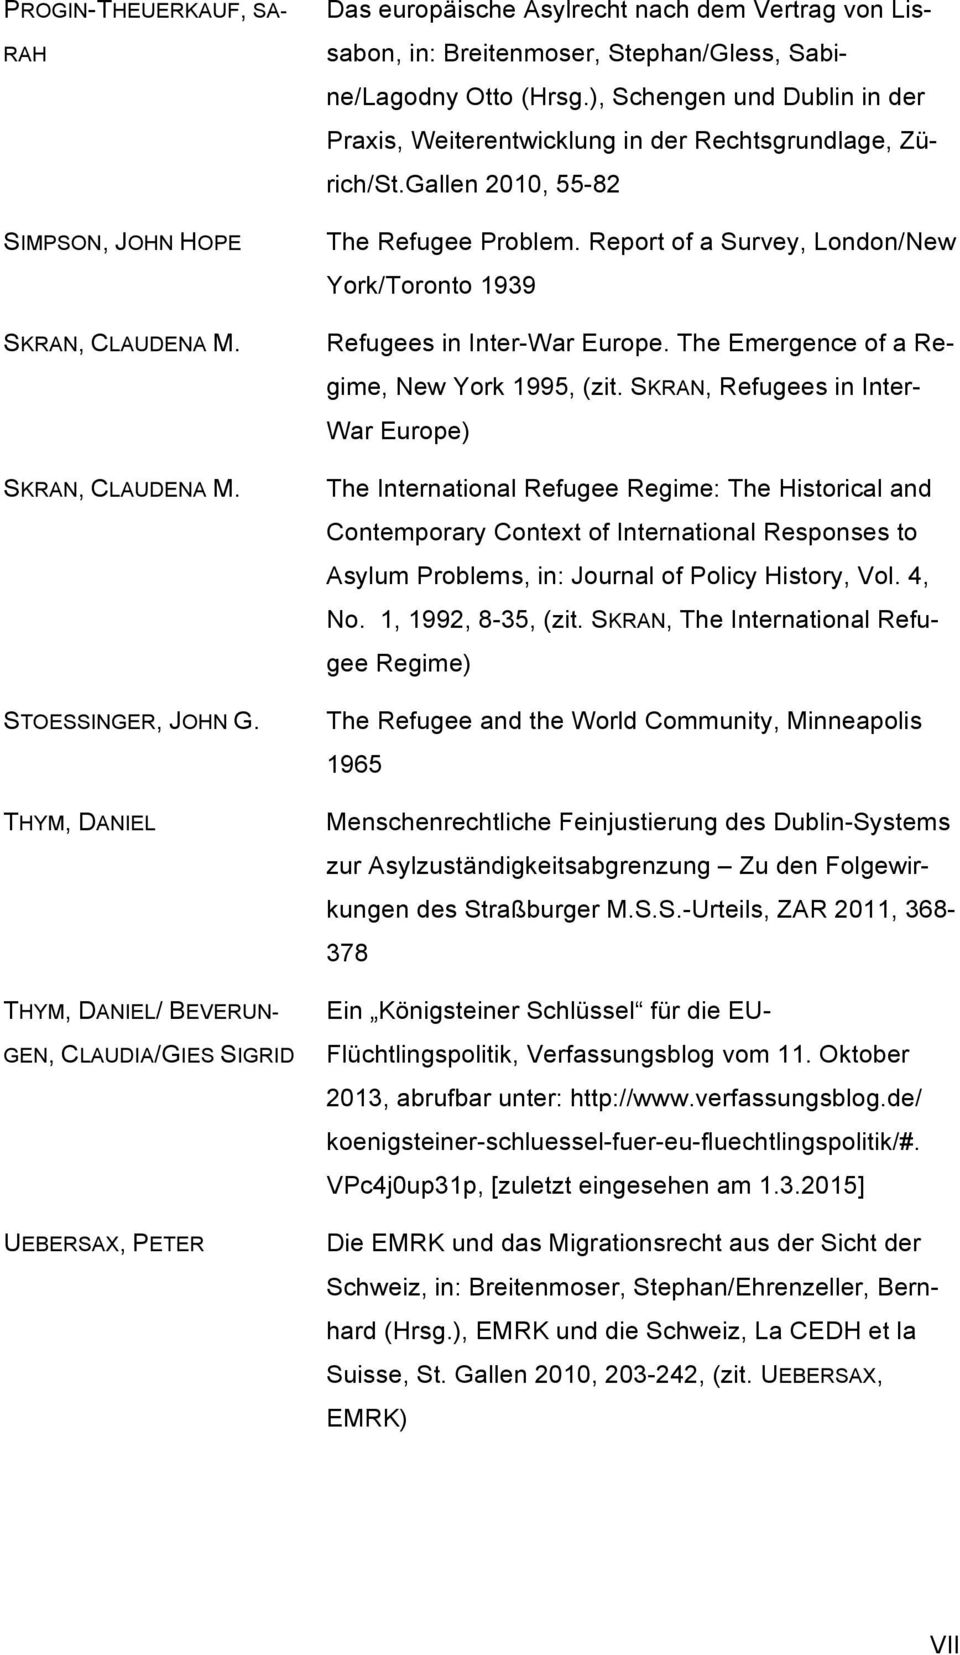 ), Schengen und Dublin in der Praxis, Weiterentwicklung in der Rechtsgrundlage, Zürich/St.Gallen 2010, 55-82 The Refugee Problem.